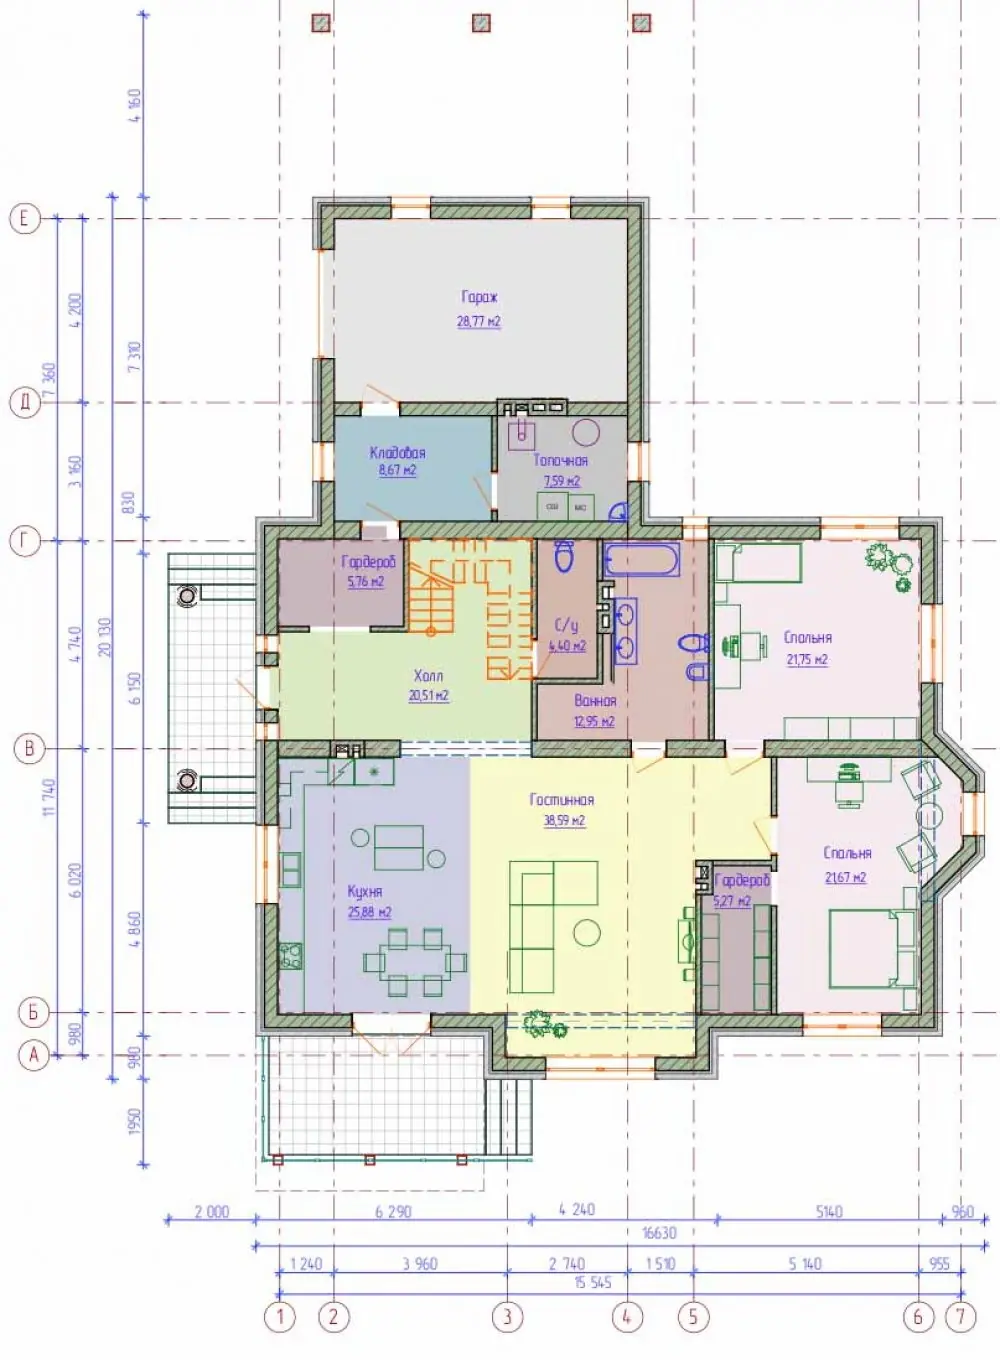 Планировка 1-го этажа дома с мансардой в английском стиле. Проект №189-01